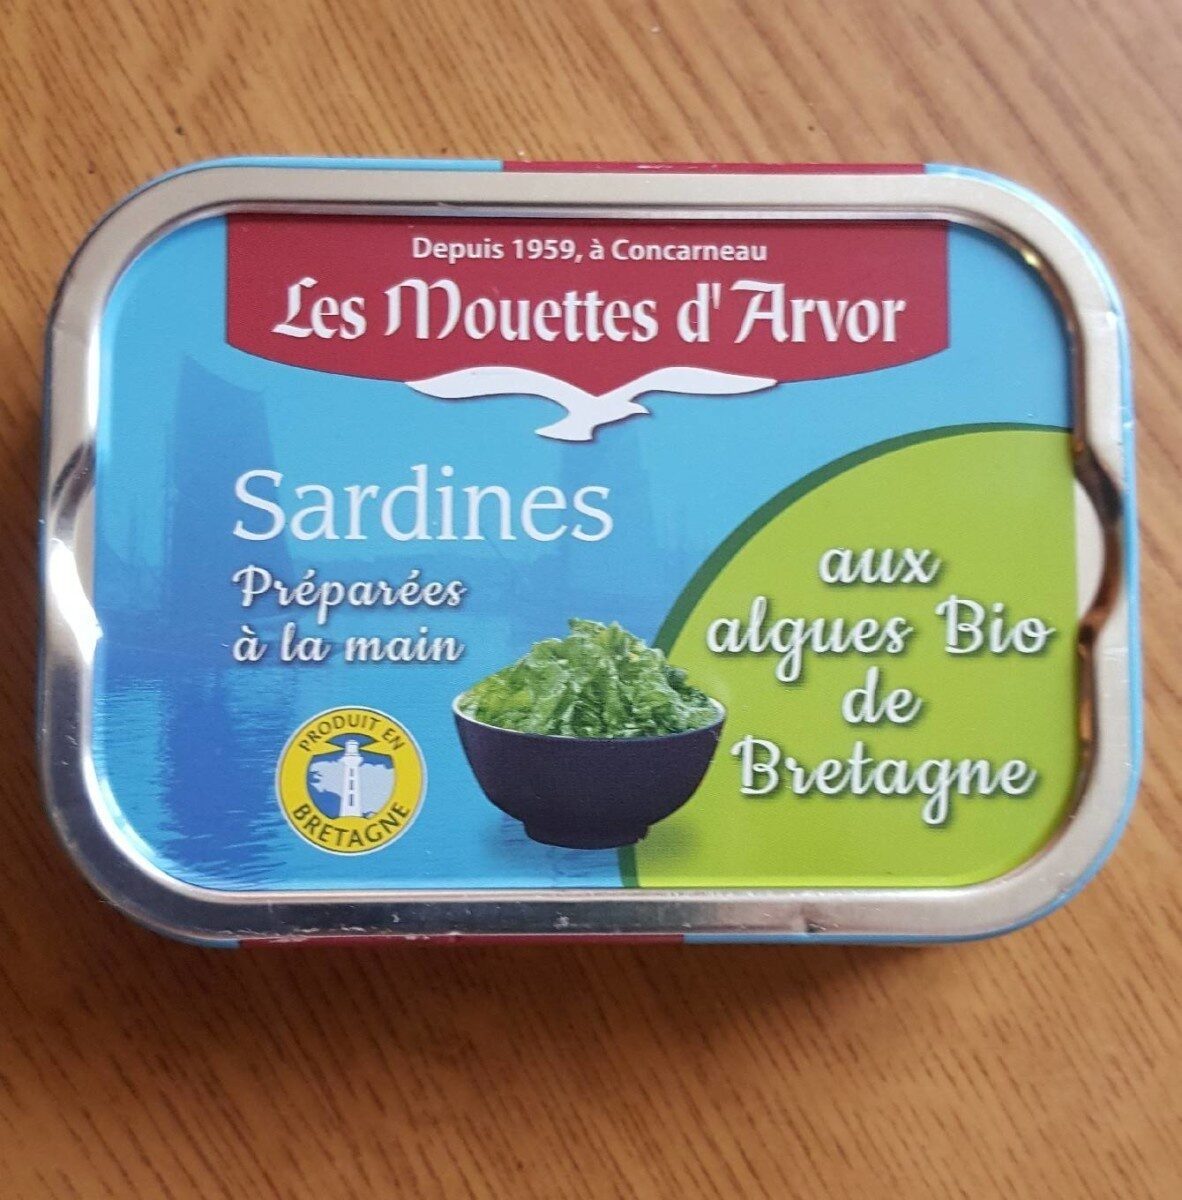 Sardines aux algues Bio de Bretagne - Tableau nutritionnel